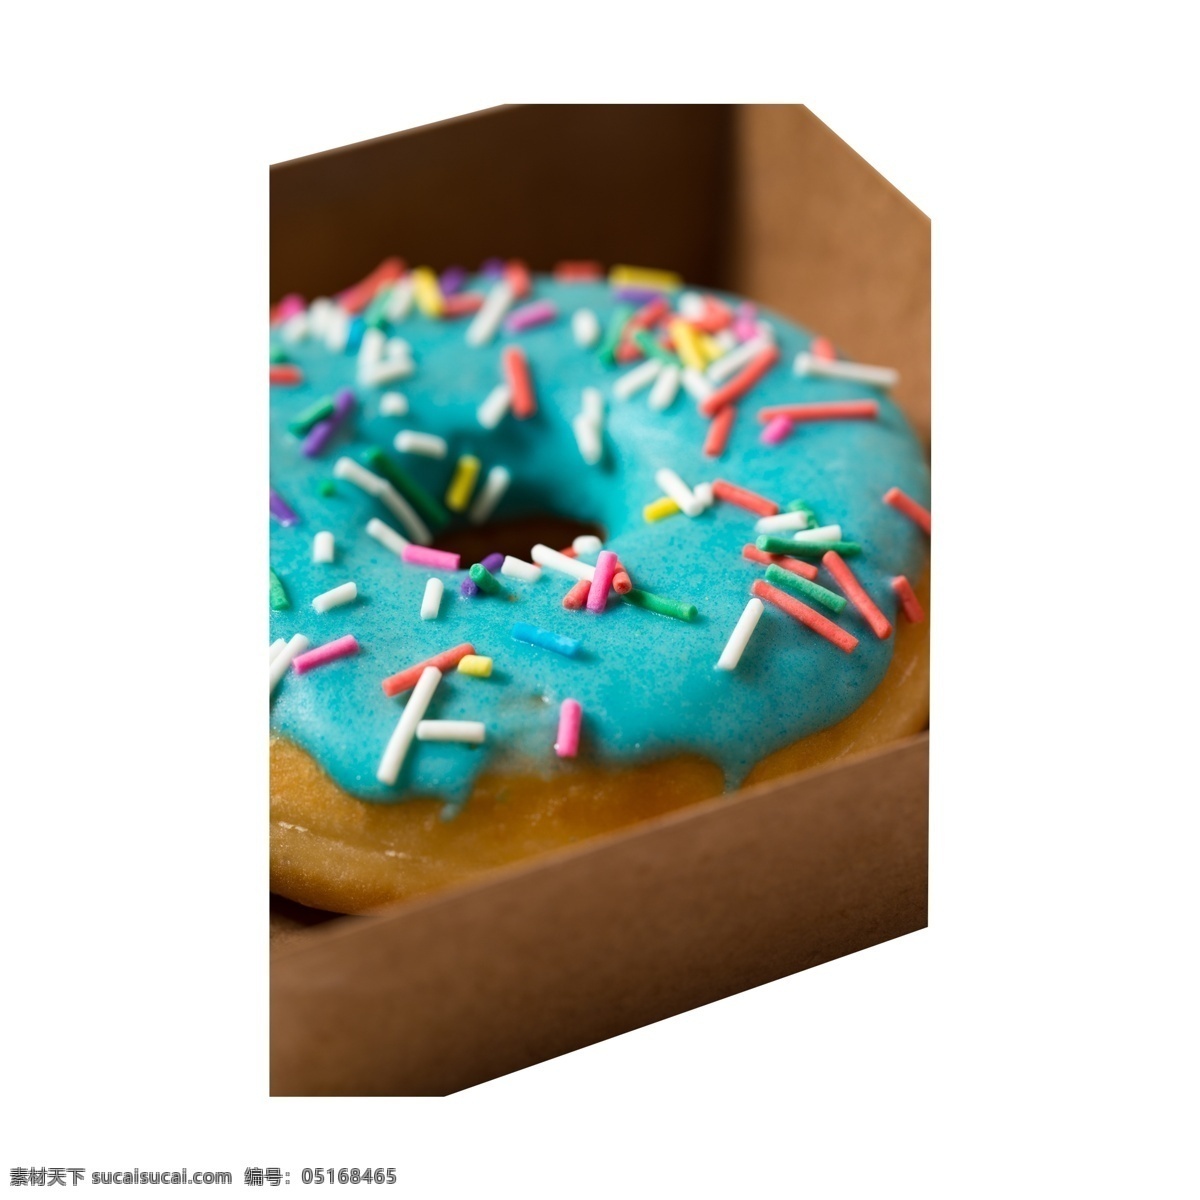 一个 放在 纸盒 里 甜甜 圈 甜甜圈 巧克力 食物 蓝色 糖果色 甜点 甜食 甜品 下午茶 烘培 美食 美味